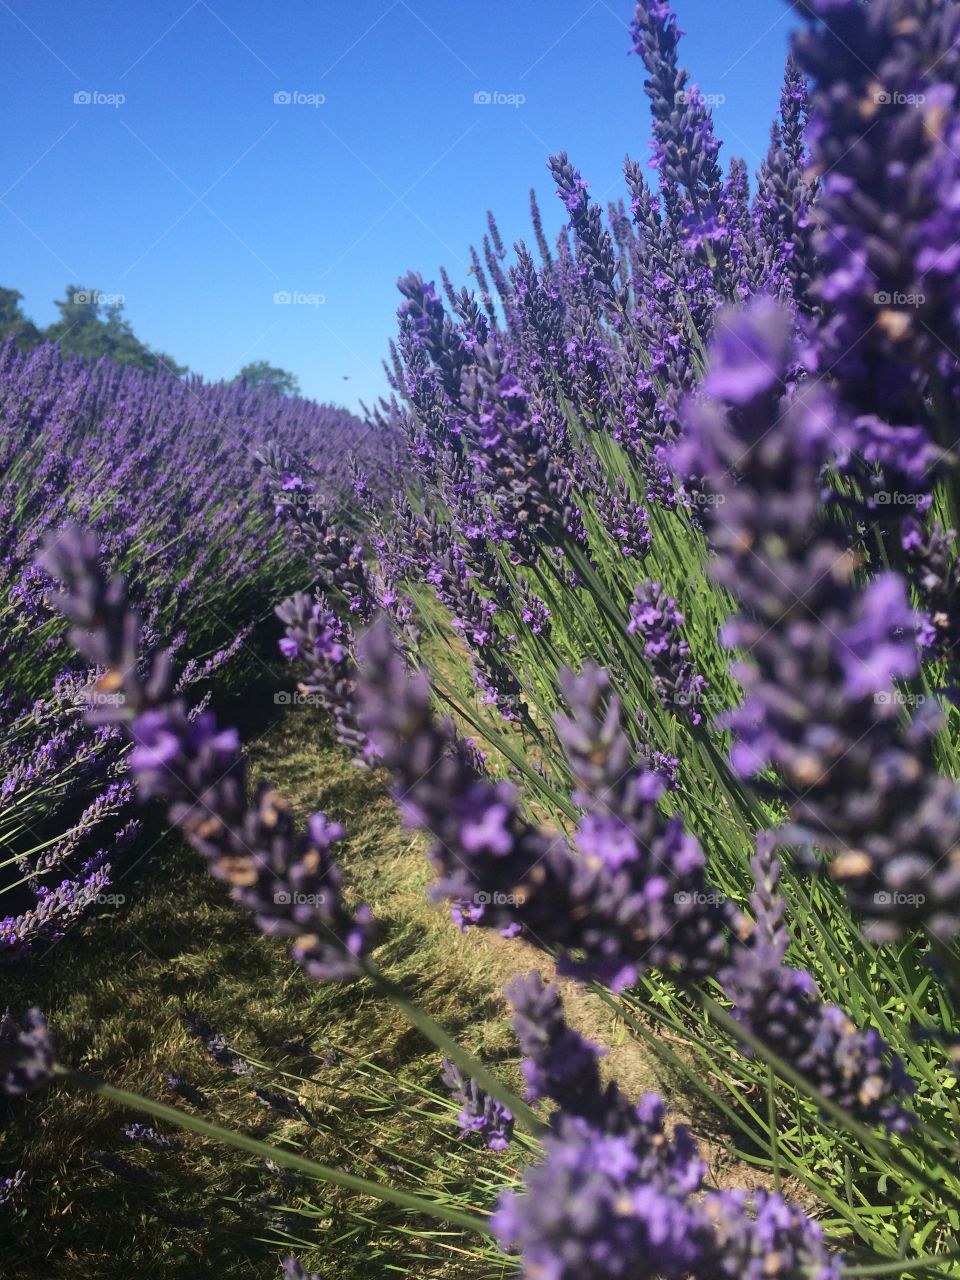 Lavender fields forever 